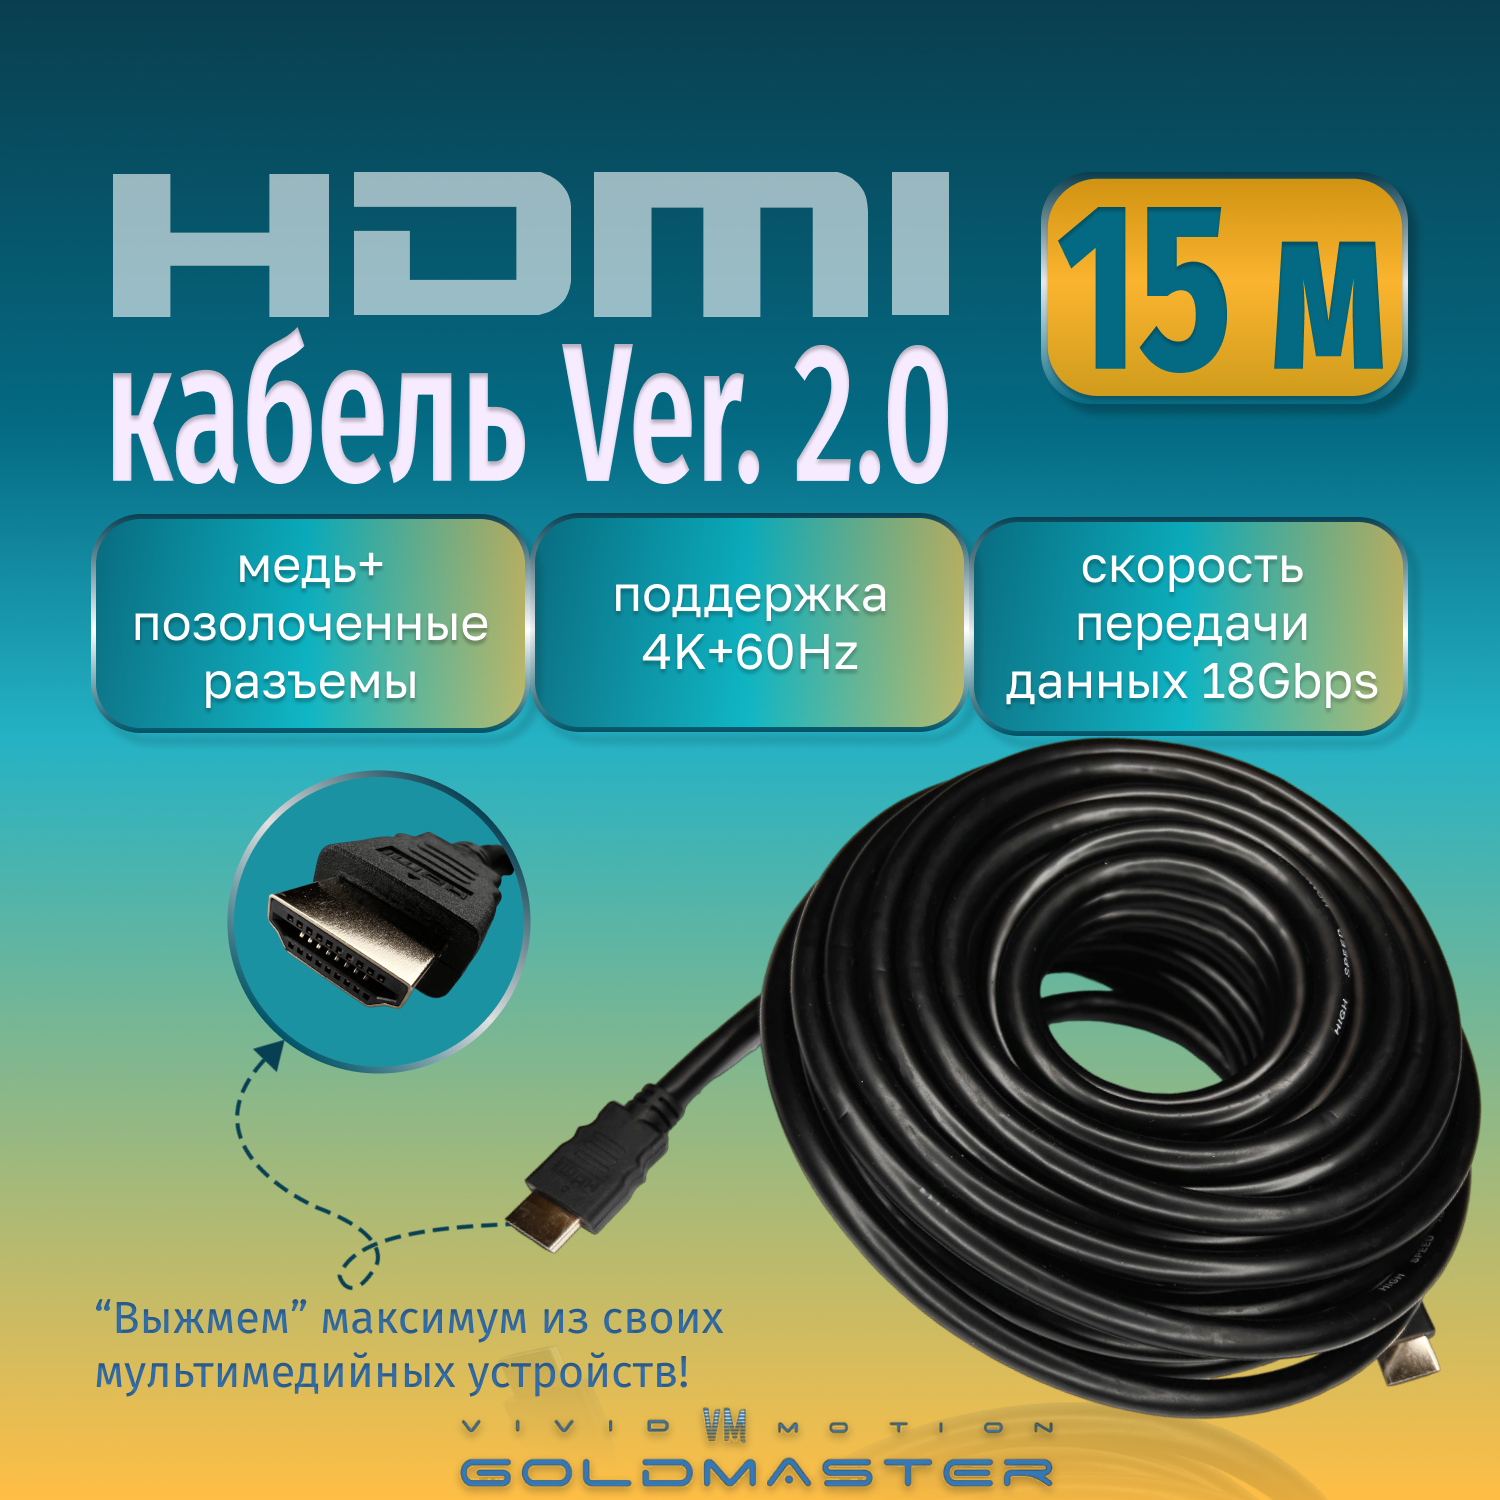 Кабель GoldMaster HDMI 15м Шнур HDMI - HDMI - 15м Ver 2.0, 26 AWG, CuCS, GoldMaster с позолоченными коннекторами